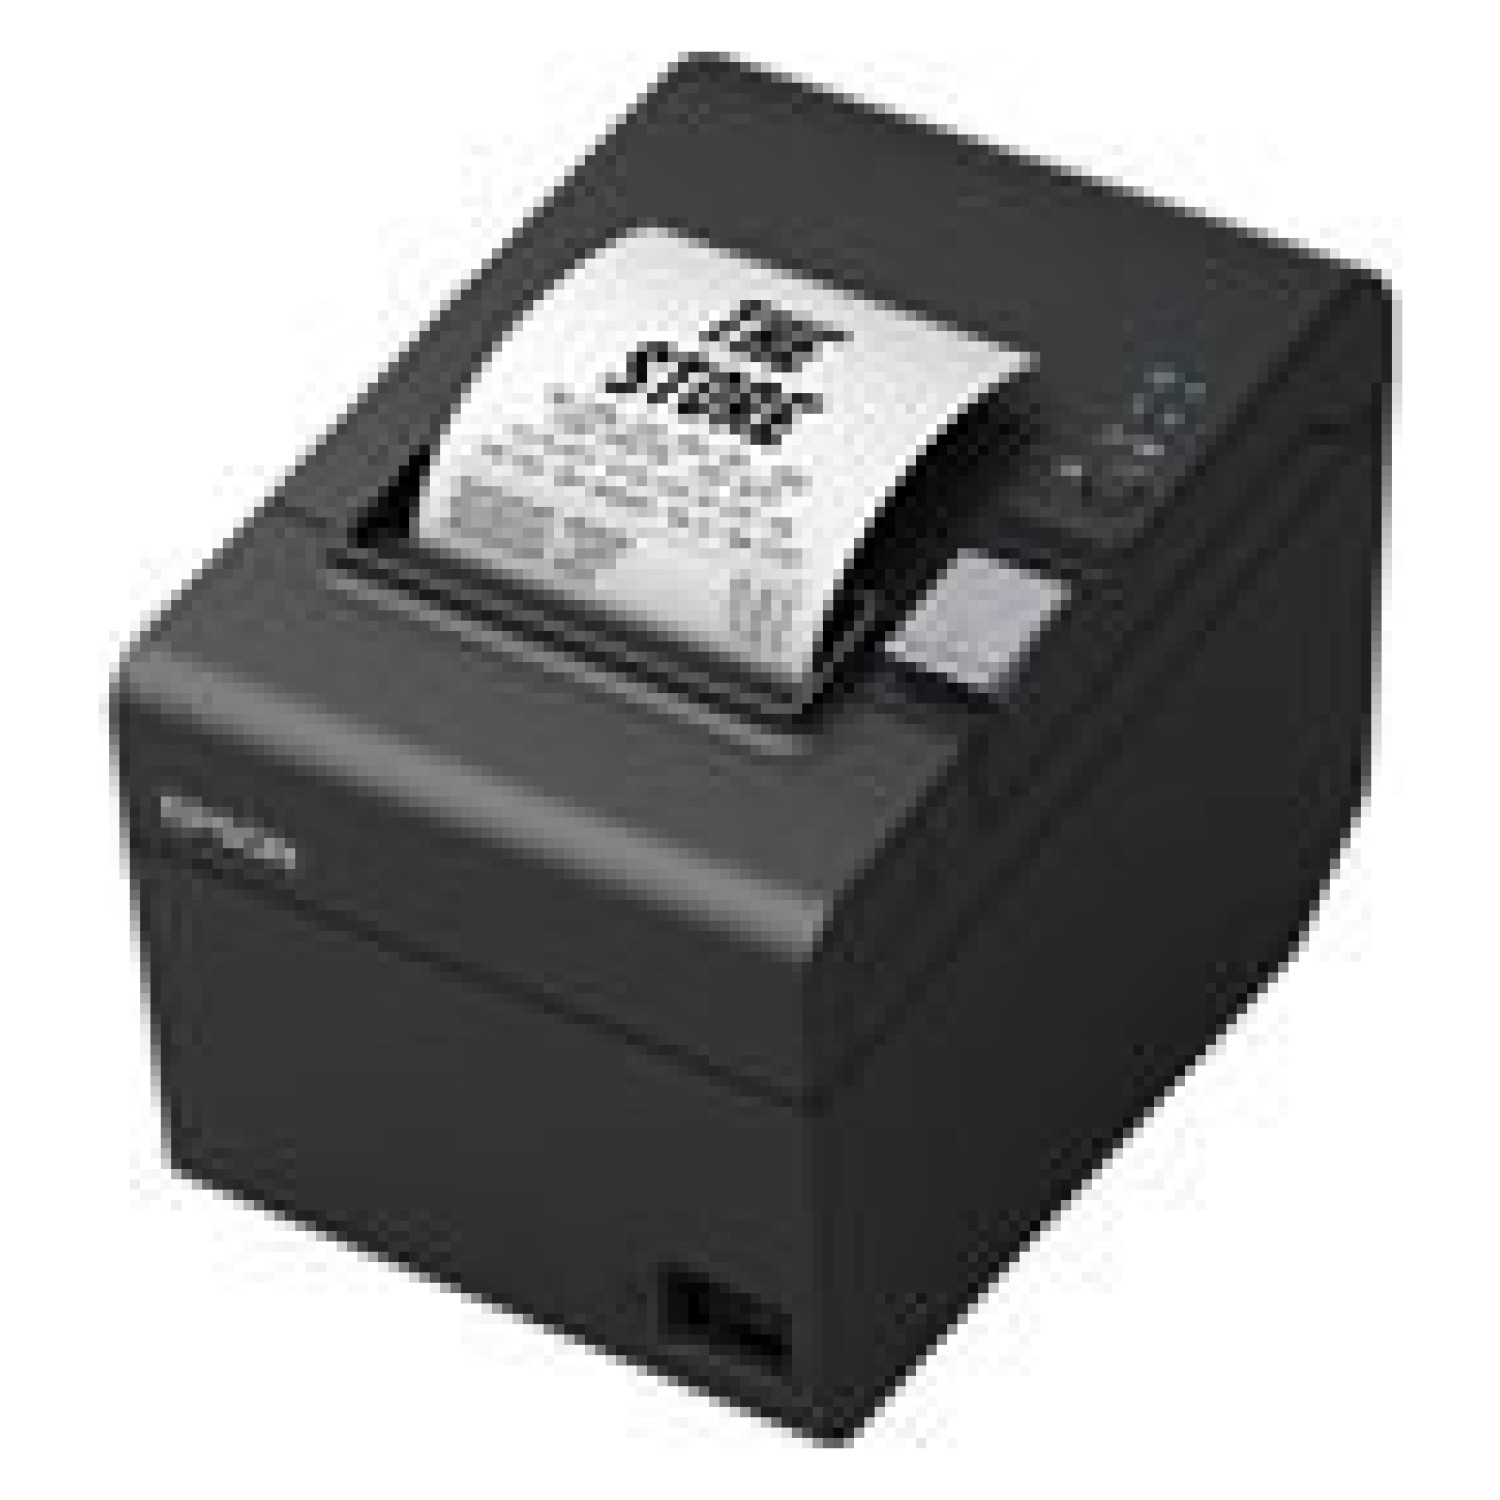 EPSON POS Printer TM-T20III (011)